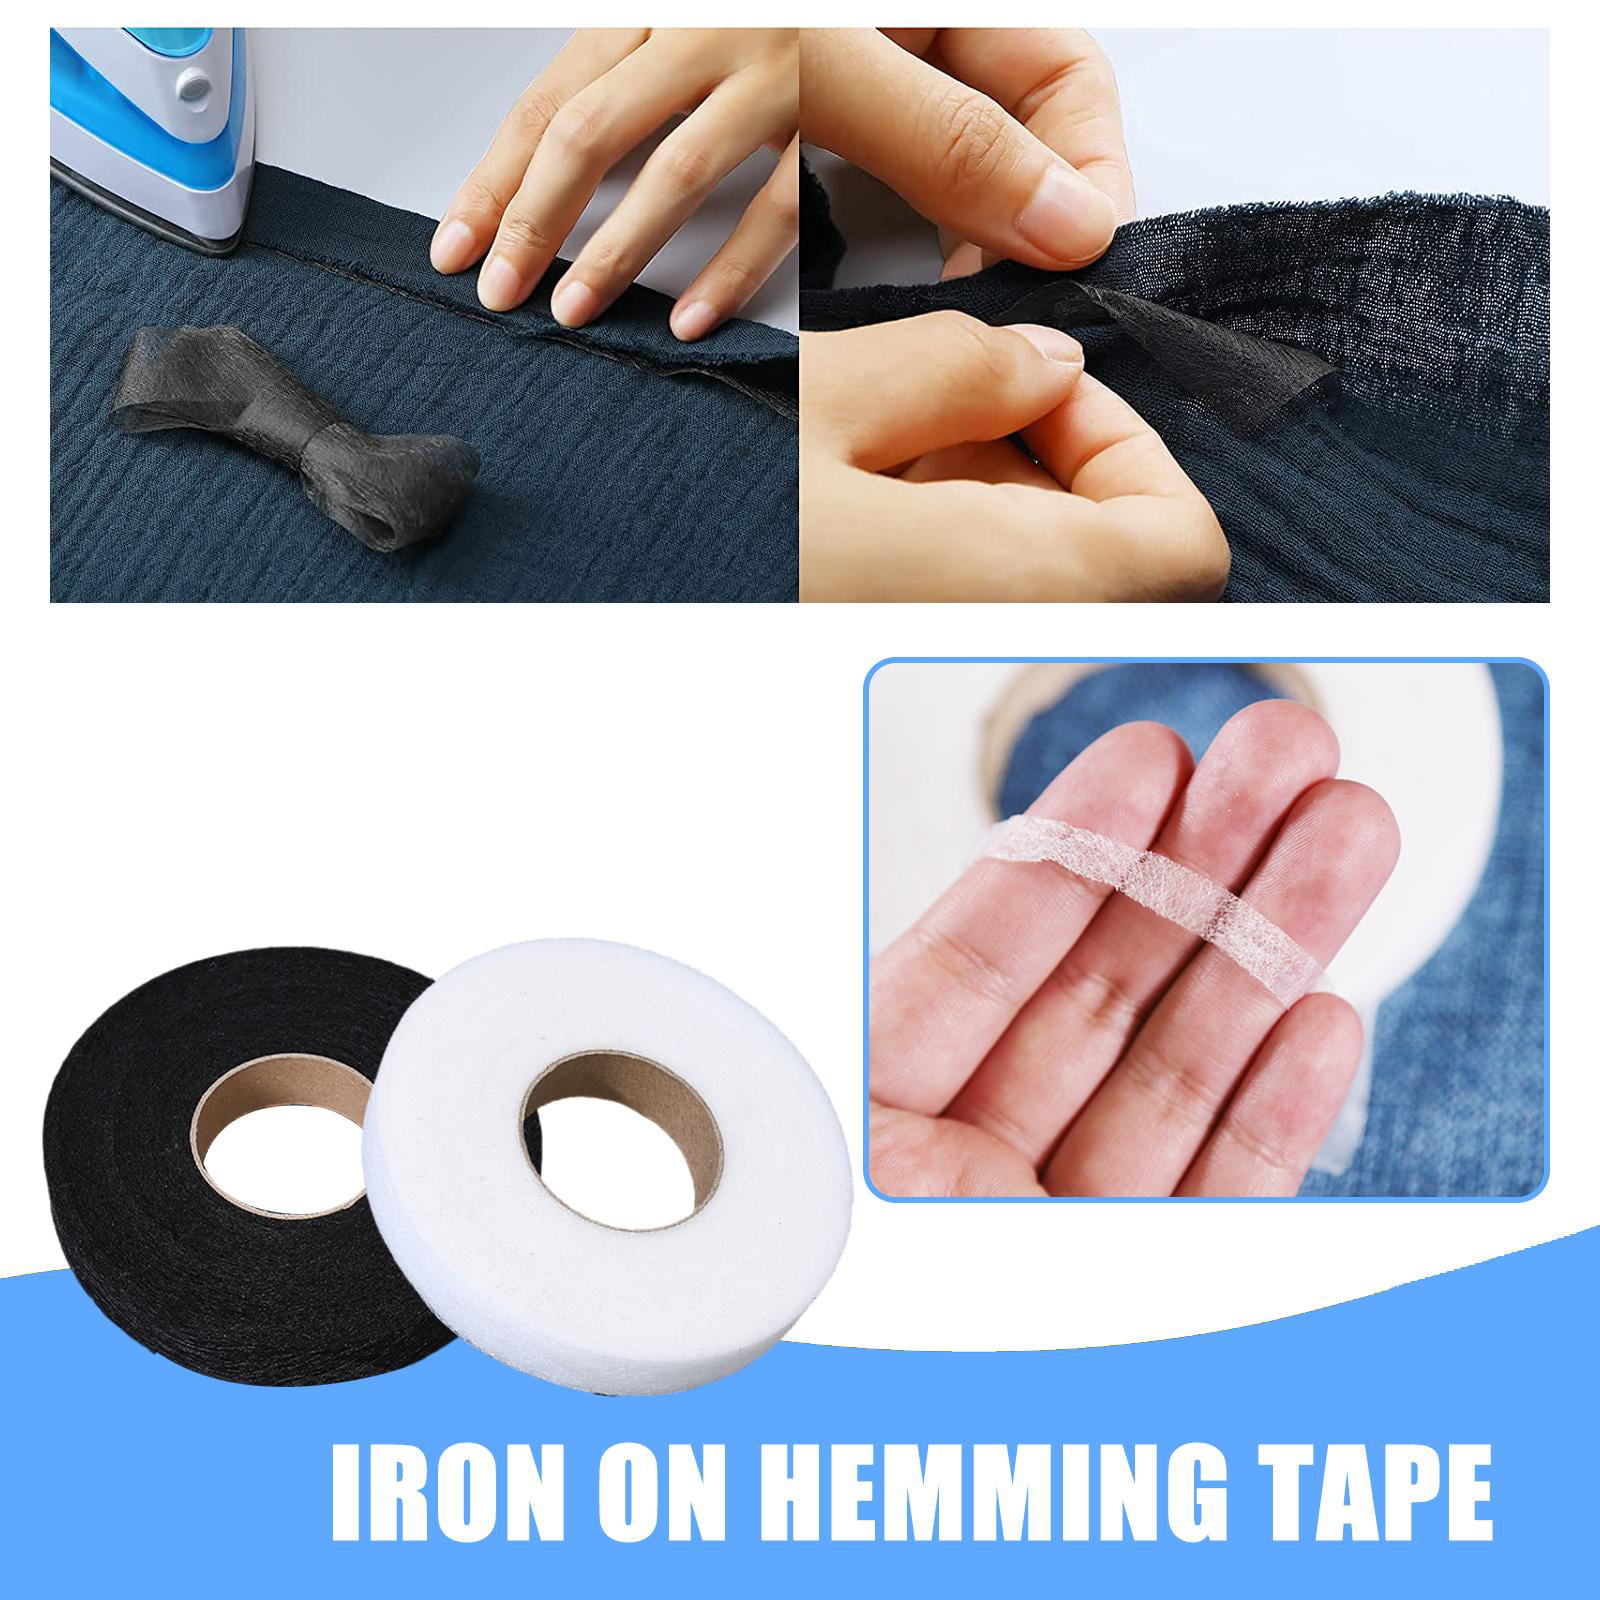 Iron On Hemming Tape,Fabric Fusing Hemming Tape, Adhesive Hem Tape